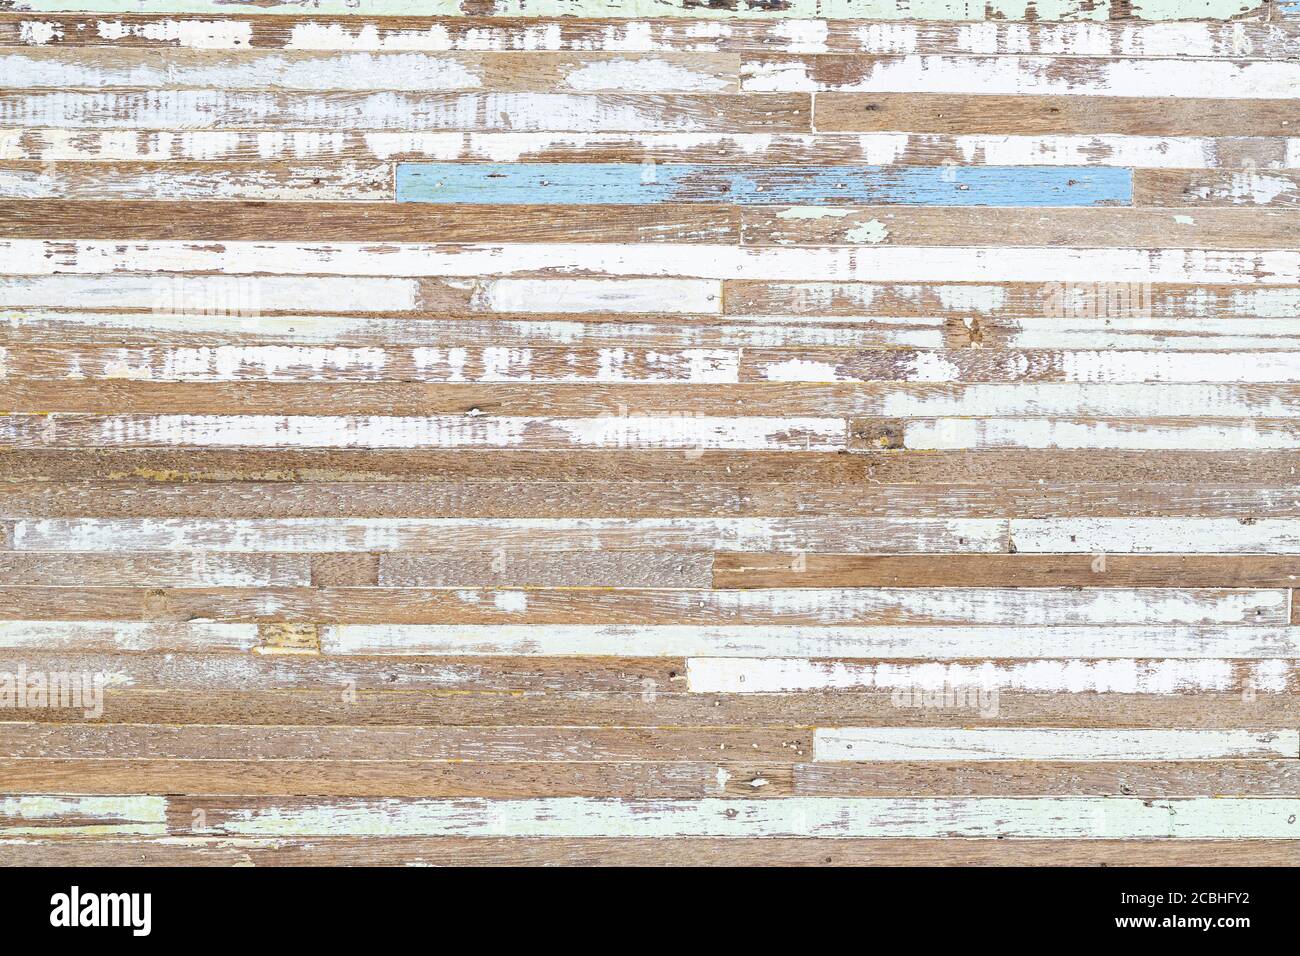 Grunge vieux meubles en bois avec peeling shabby bleu et vert peinture surface en bois texturé arrière-plan abstrait. Vieux rustique rétro dos en bois Banque D'Images